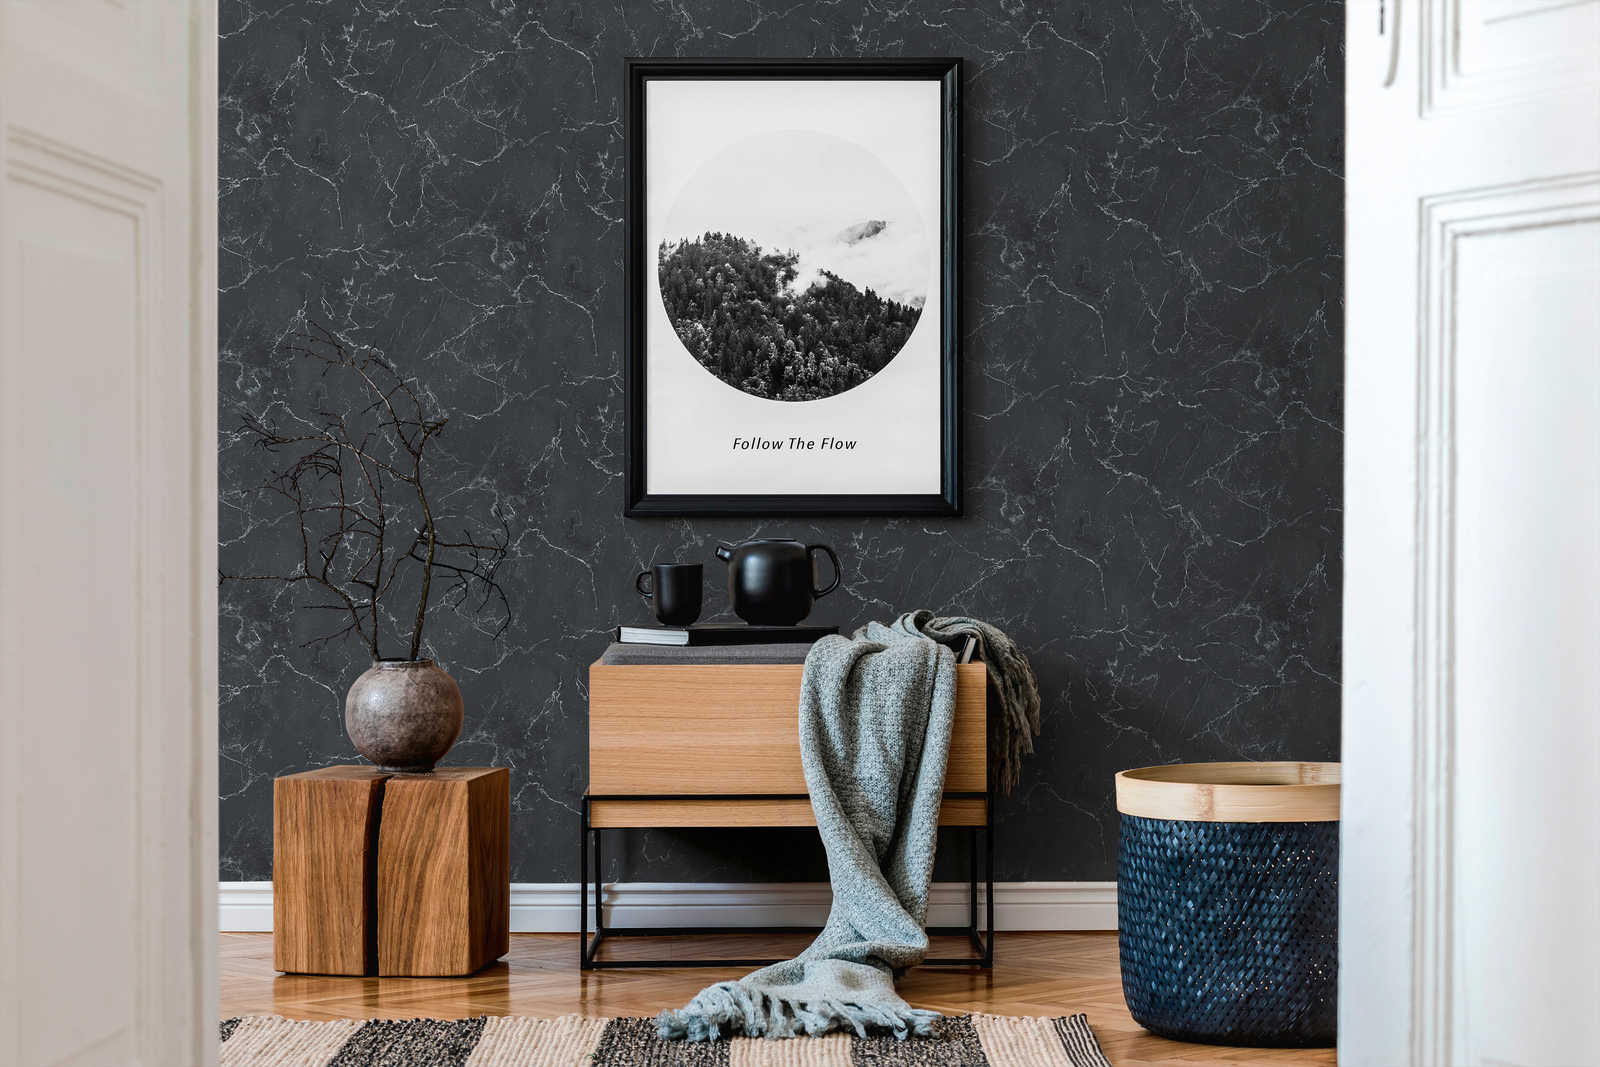             Vliesbehang marmerlook donkergrijs, Design by MICHALSKY
        